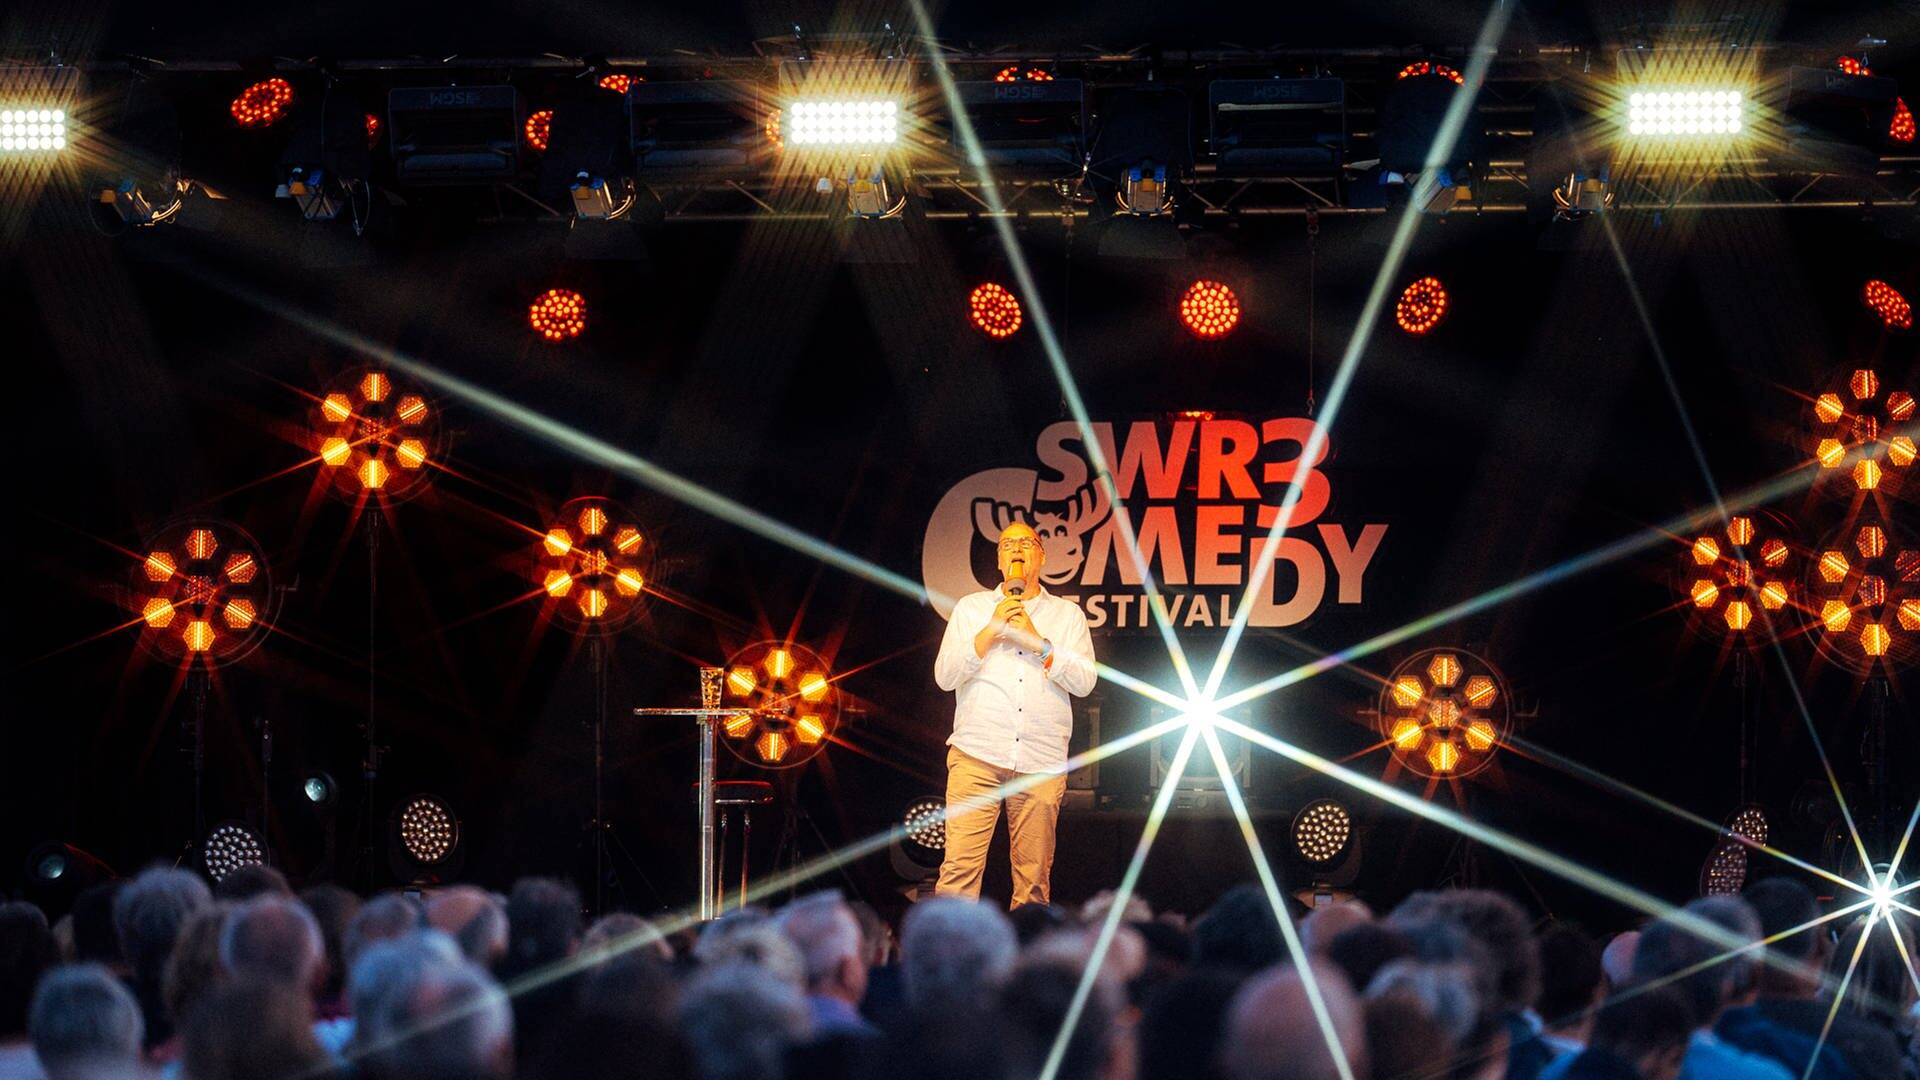 Chako Habekost beim SWR3 Comedy Festival 2022 (Foto: SWR3, Narmo Visuals / Adrian Walter)